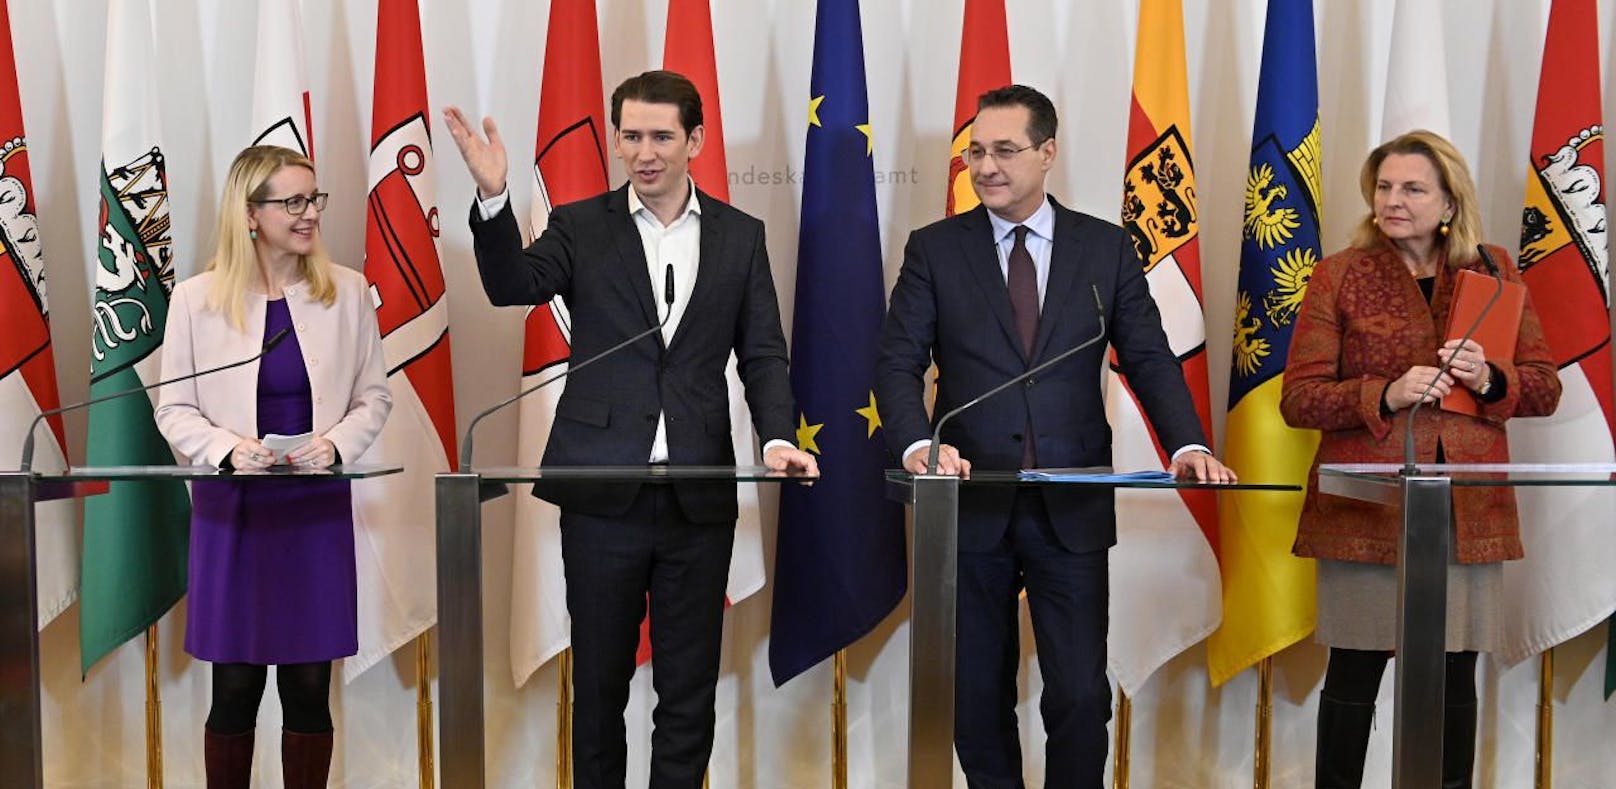 Wirtschaftsministerin Margarete Schramböck (ÖVP), Bundeskanzler Sebastian Kurz (ÖVP), Vizekanzler Heinz Christian Strache (FPÖ), Außenministerin Karin Kneissl (FPÖ)